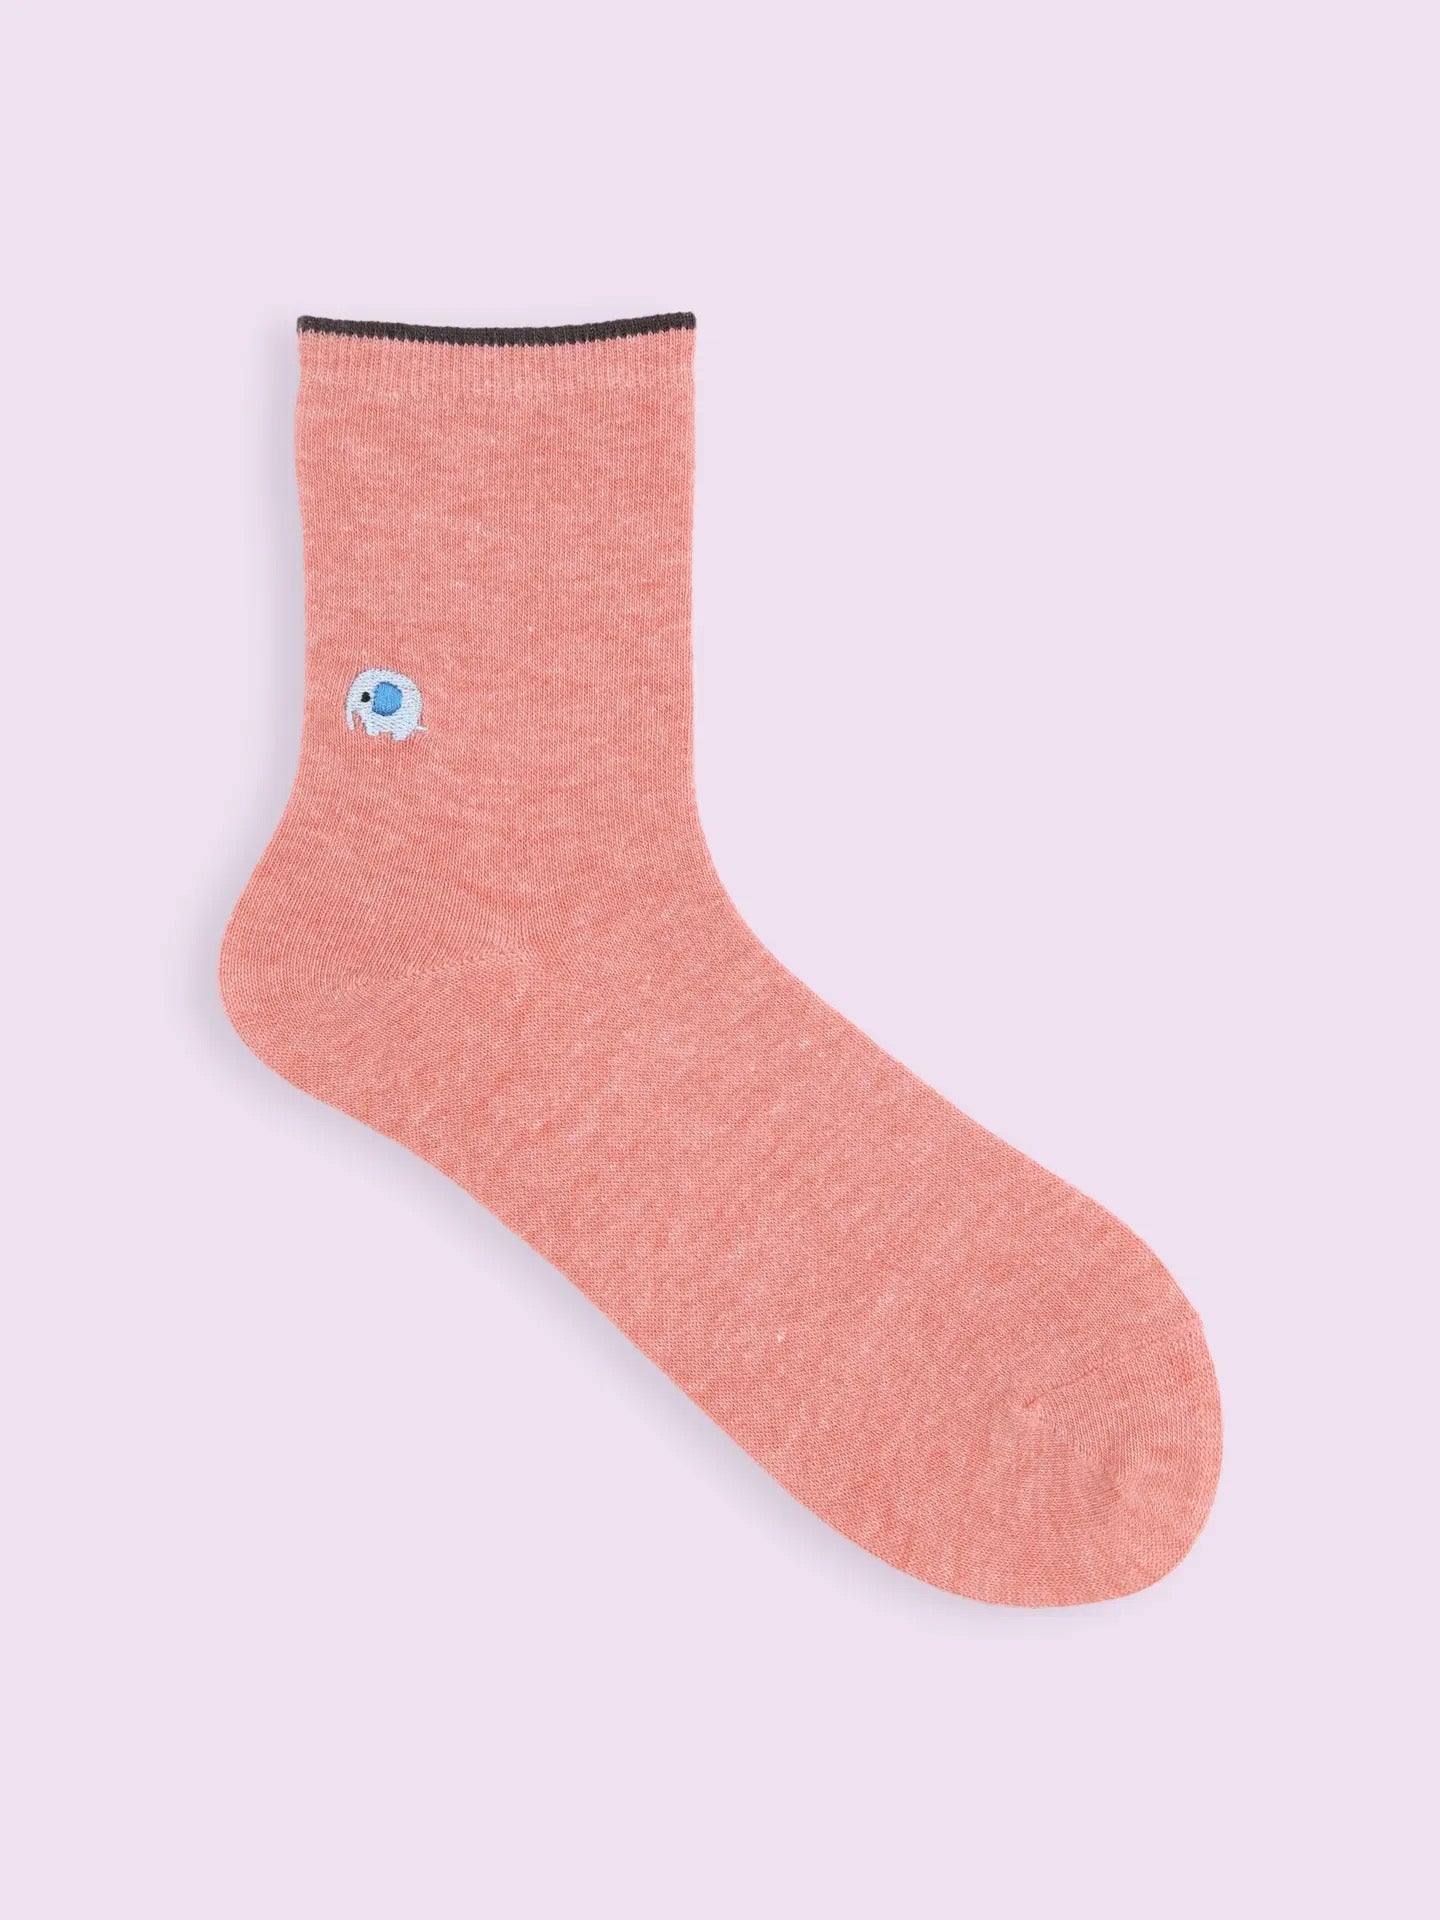 靴下屋Tabio小动物图案刺绣舒适短筒袜 11色选